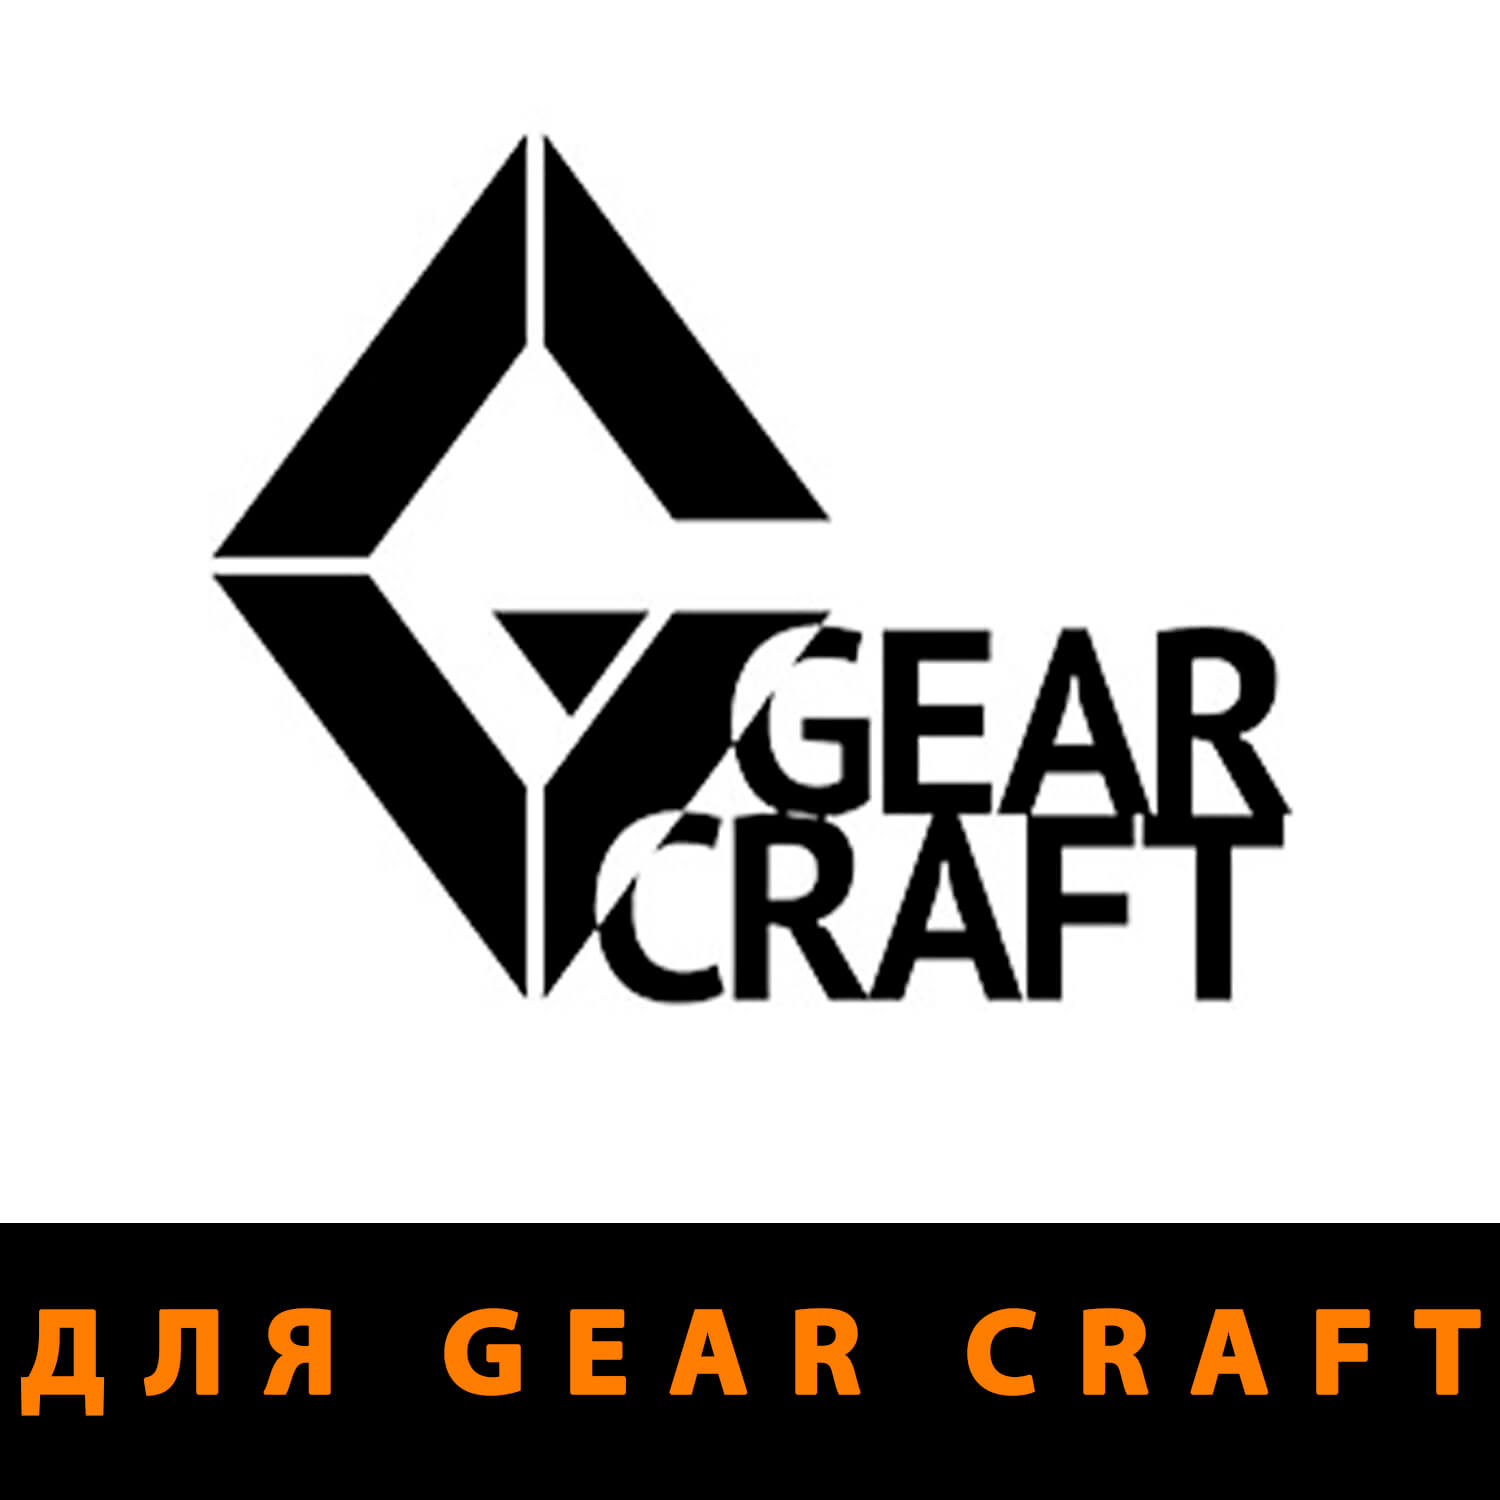 Противоосколочная защита для Gear Craft